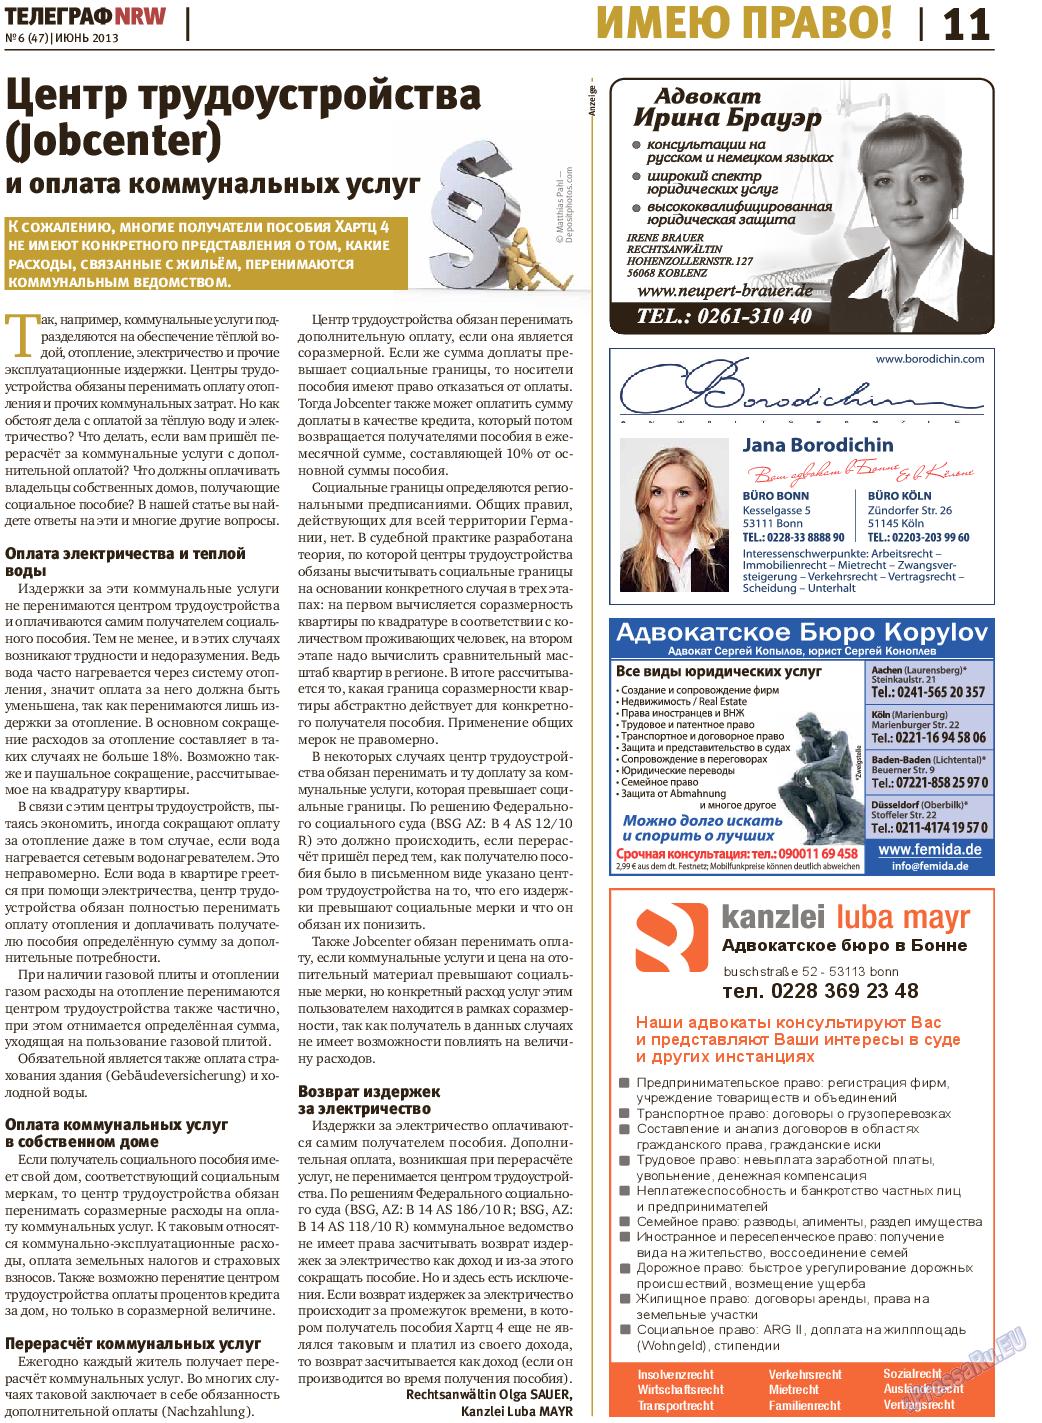 Телеграф NRW (газета). 2013 год, номер 6, стр. 11